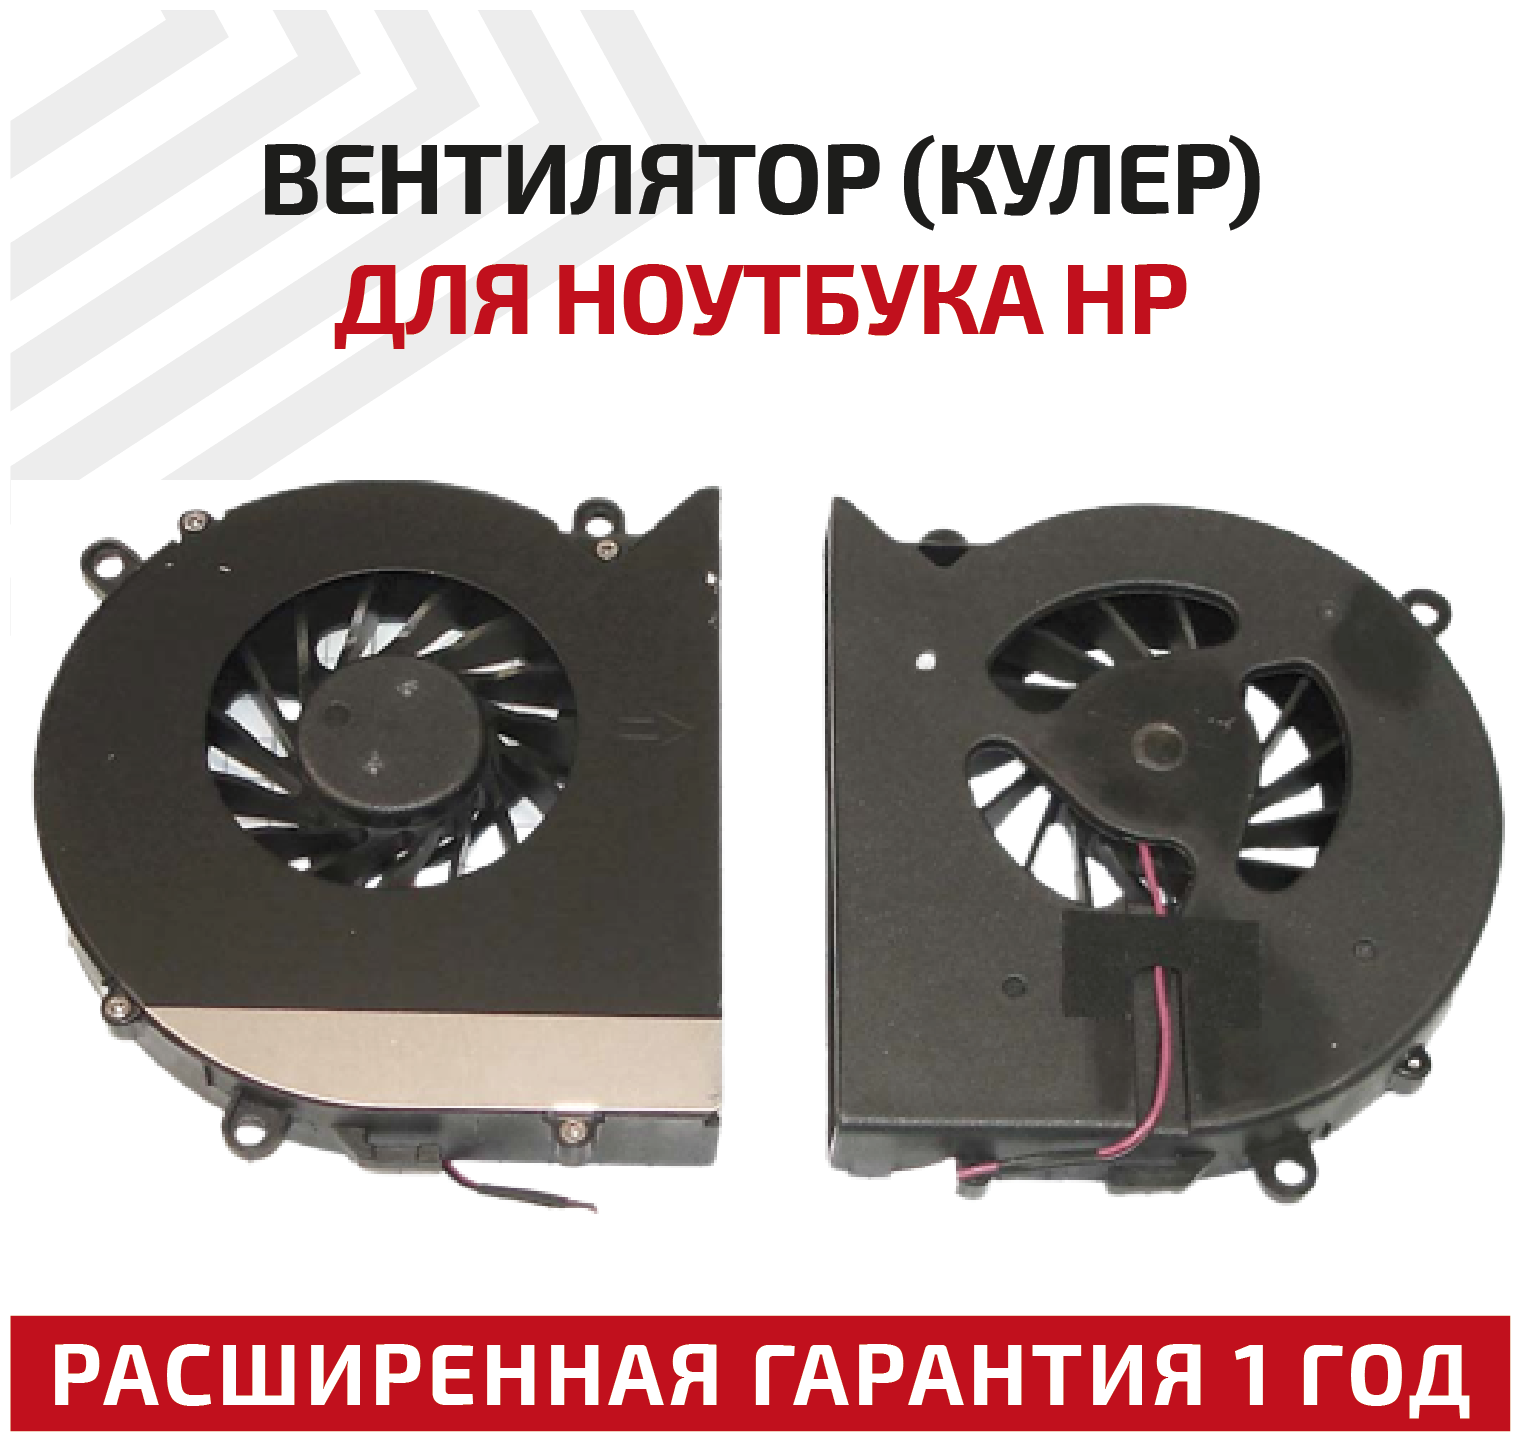 Вентилятор (кулер) для ноутбука HP Pavilion DV7-1000 Series